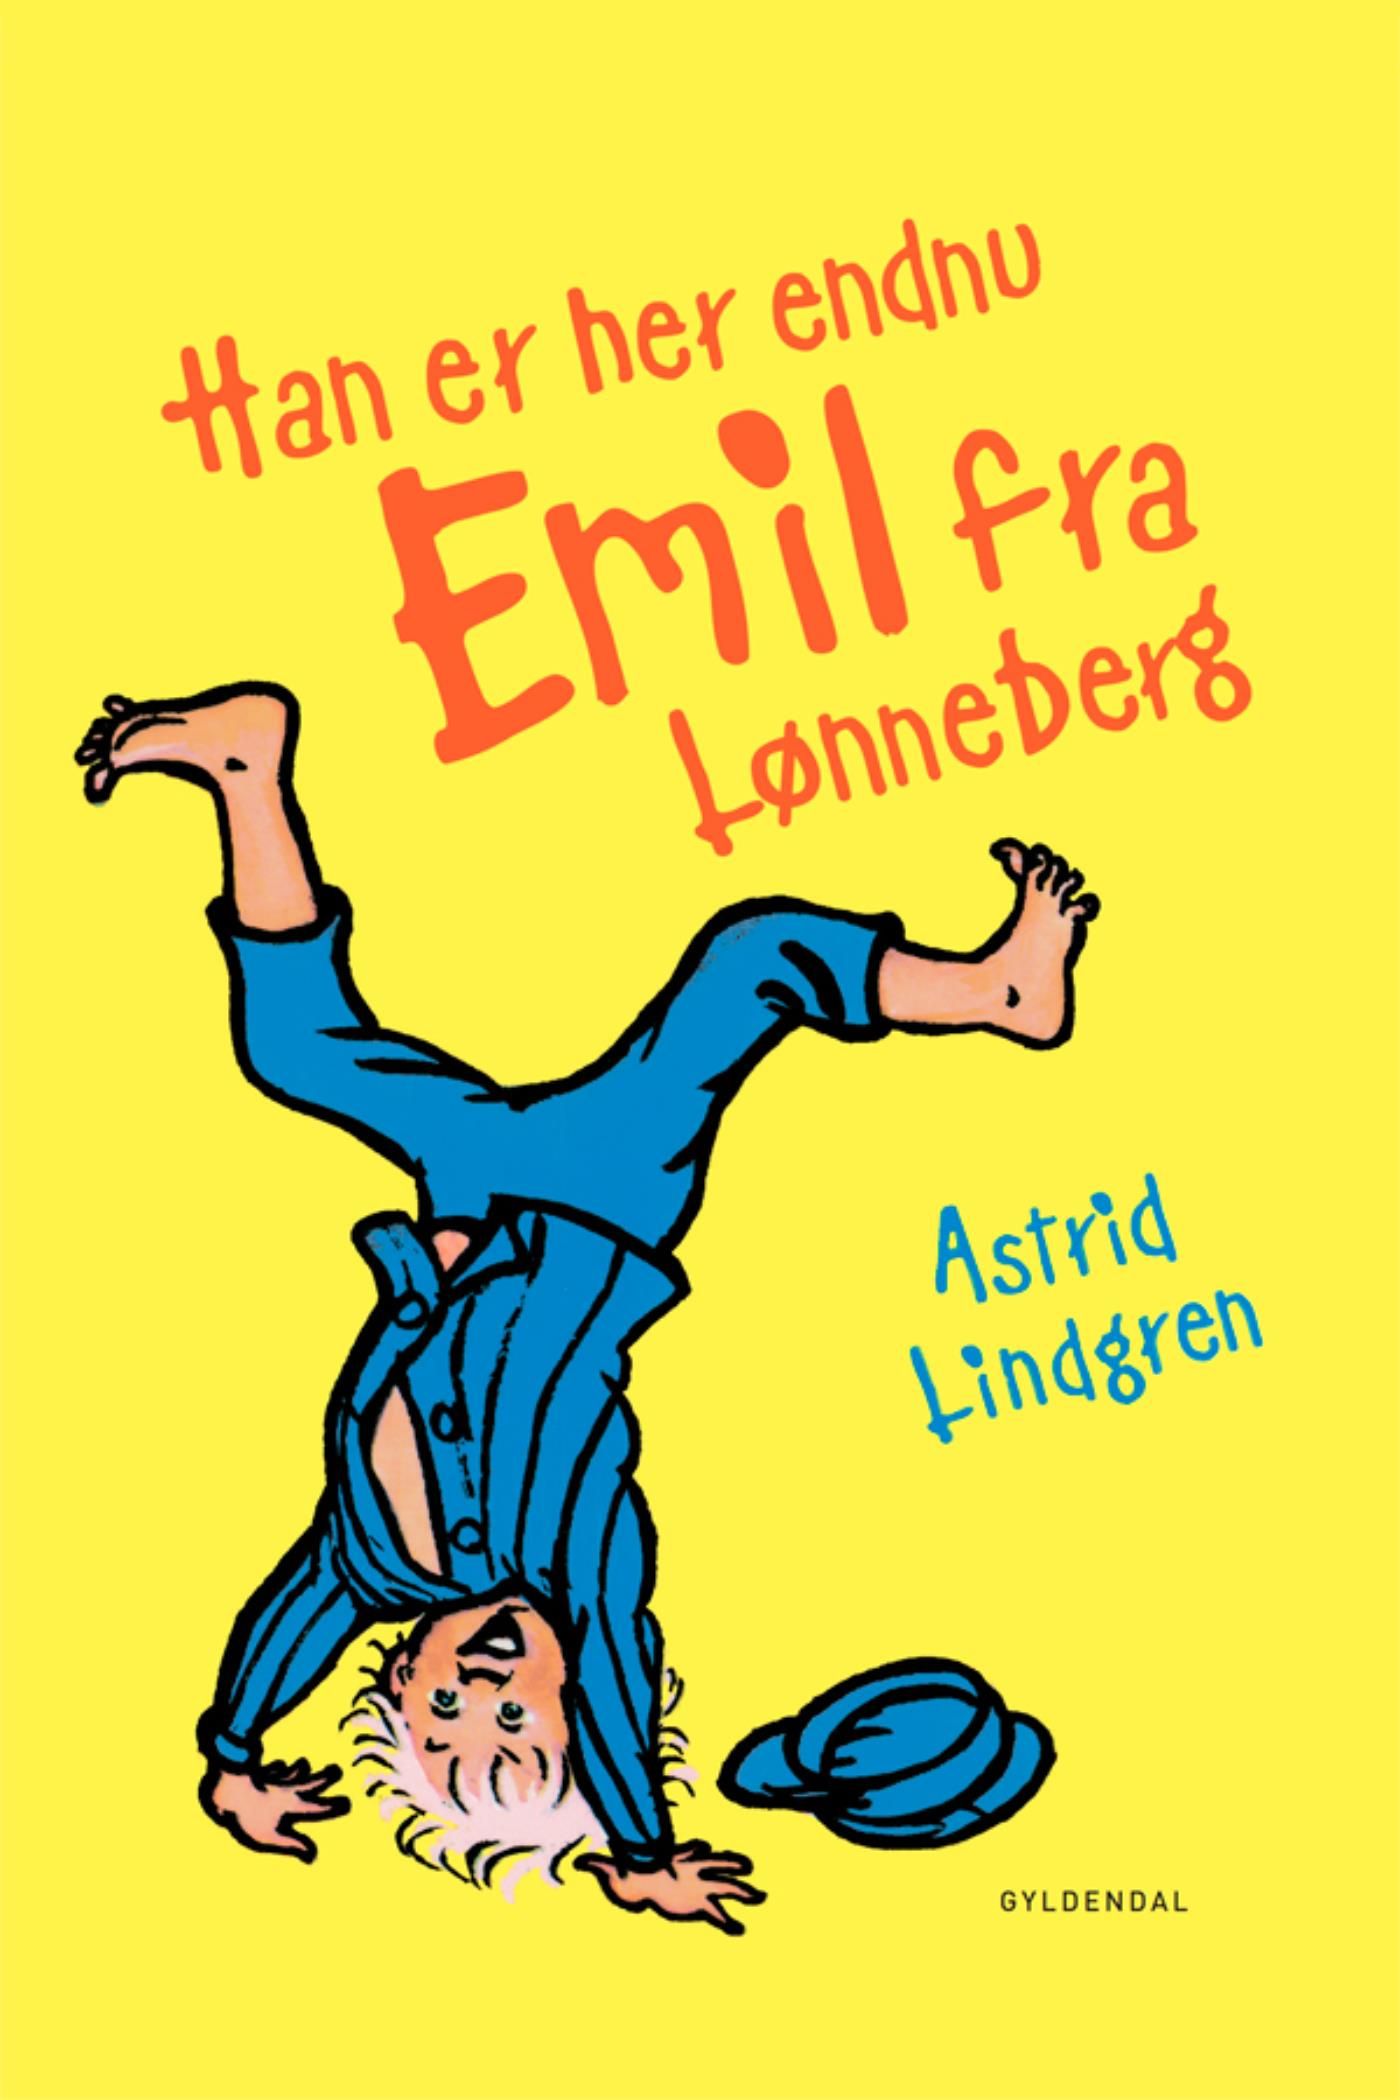 Han er her endnu - Emil fra Lønneberg, eBook by Astrid Lindgren